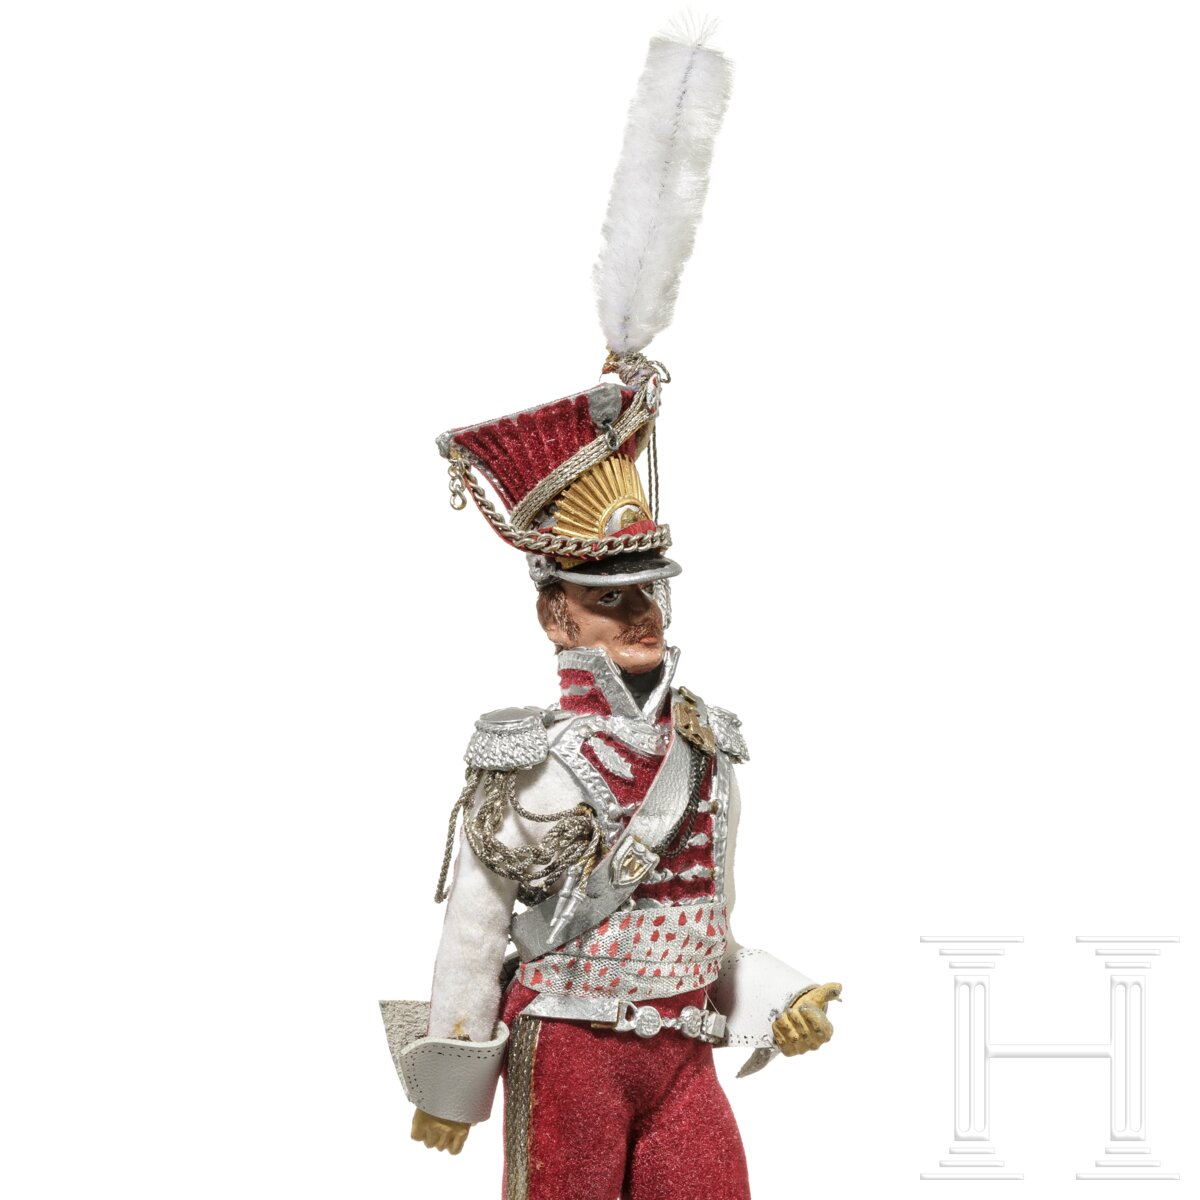 Lancier-Offizier der Garde um 1810 - Uniformfigur von Marcel Riffet, 20. Jhdt. - Image 5 of 5